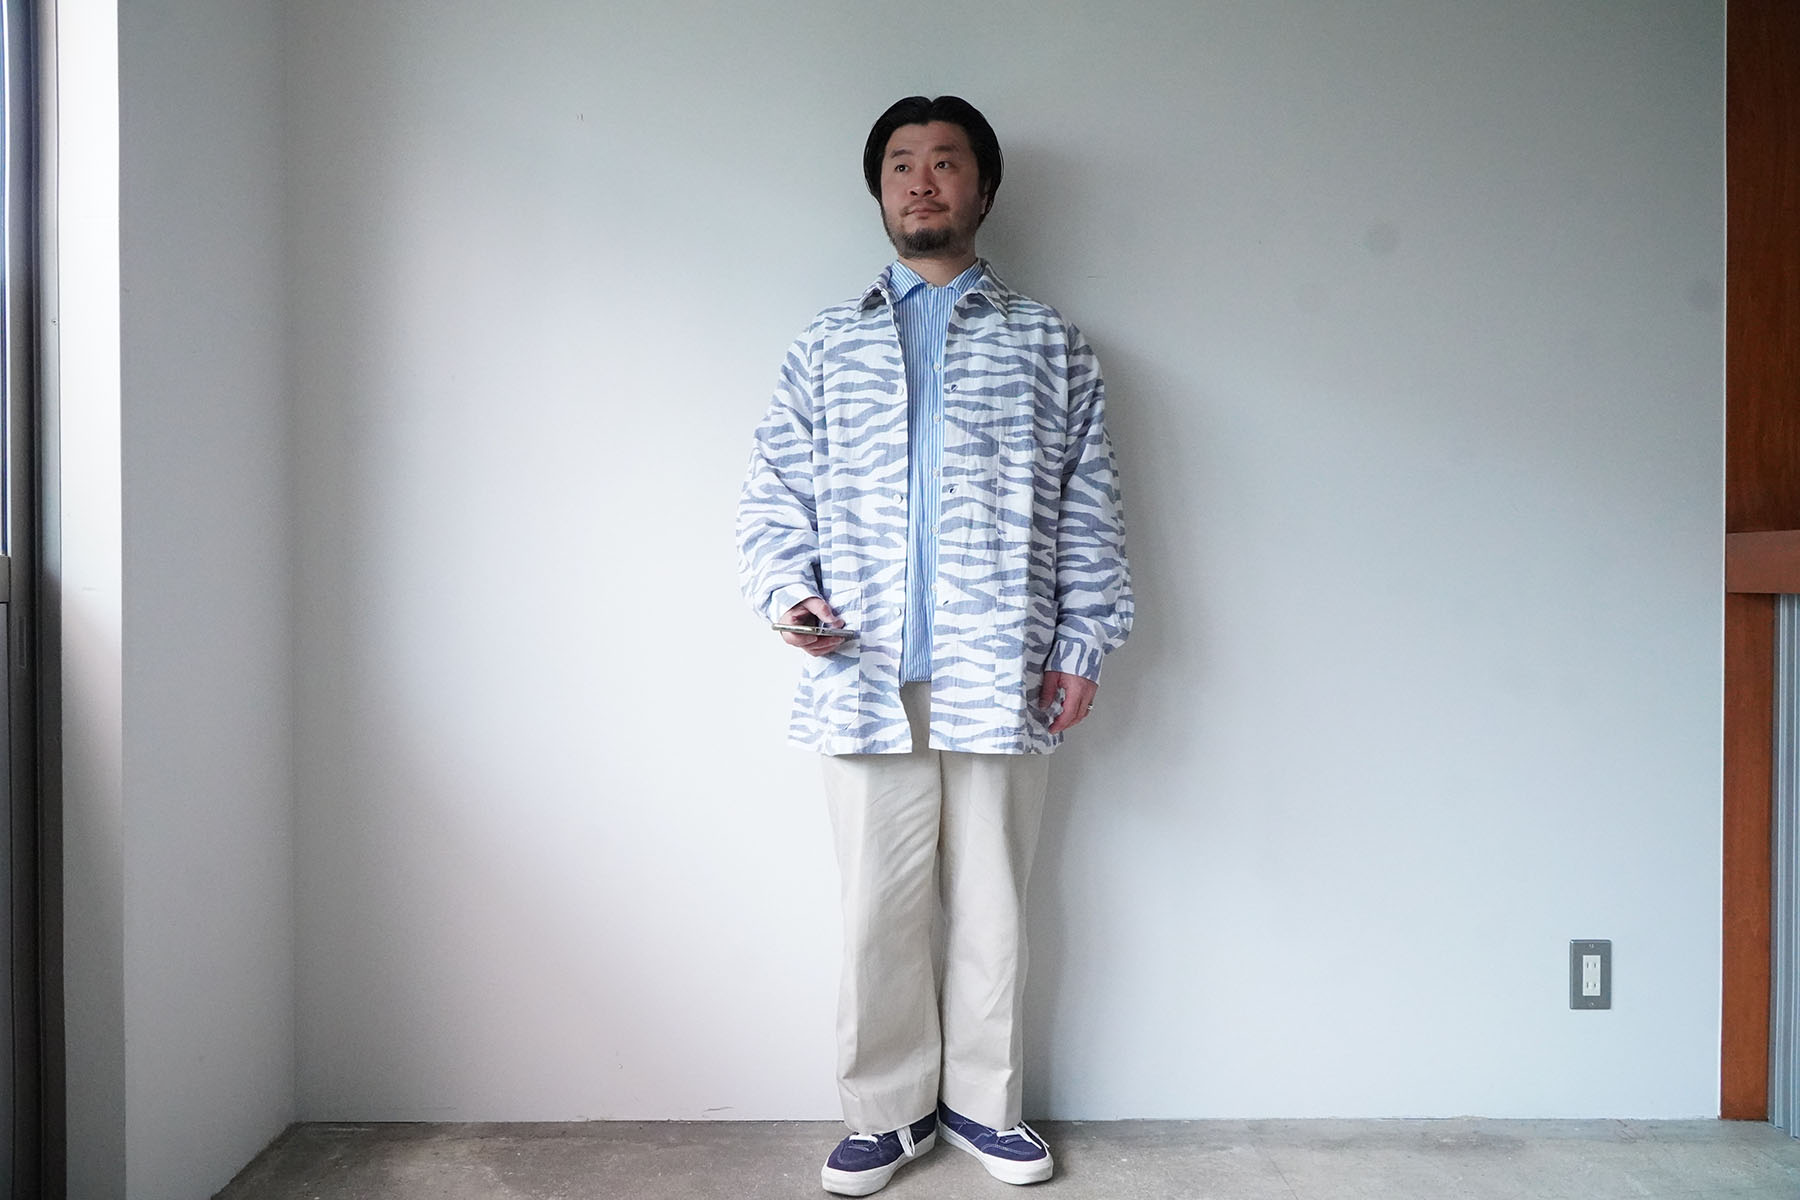 zebra pattern -sports jacket type shirts-[sowbow] wearing image